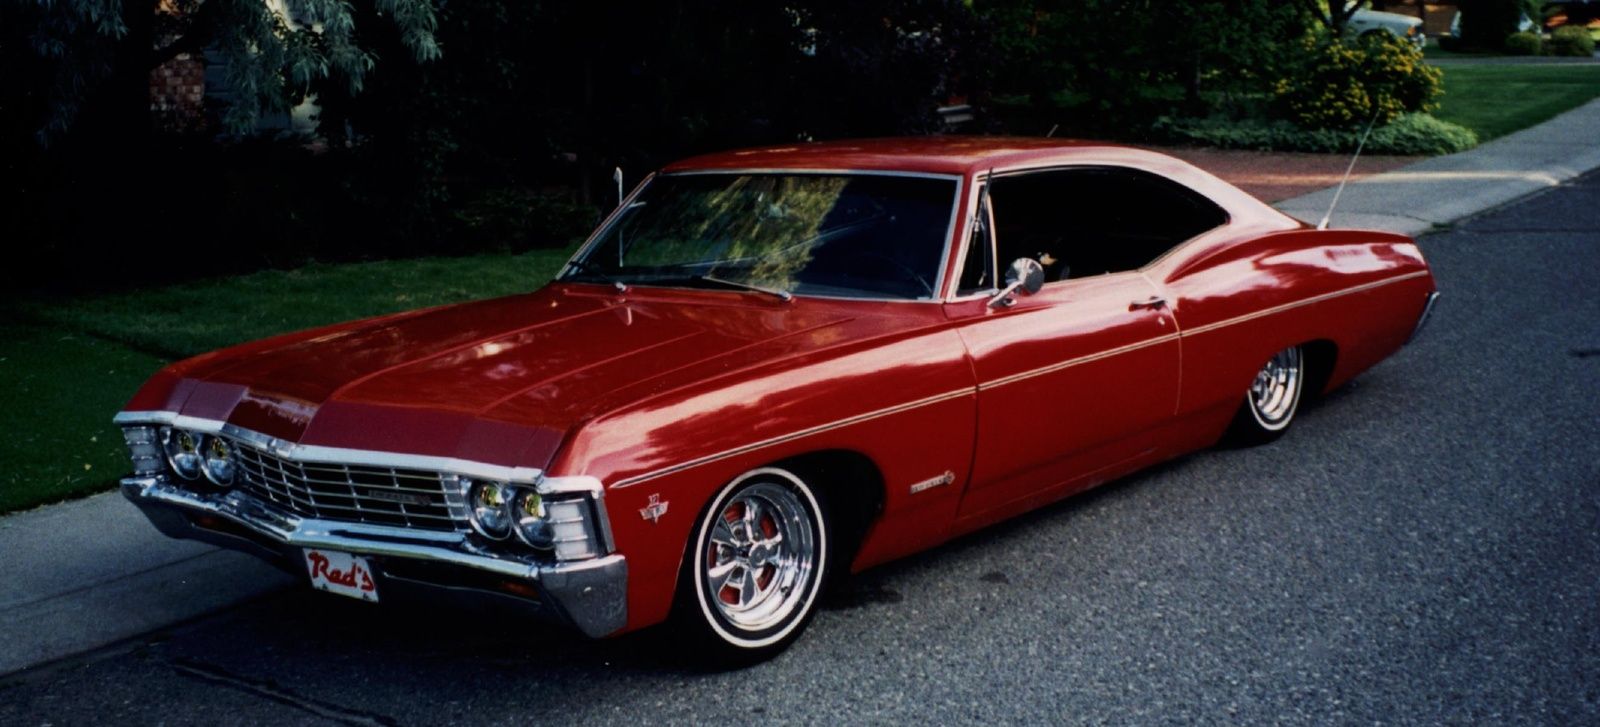 Chevrolet Impala 1967 - нестареющая классика! 1